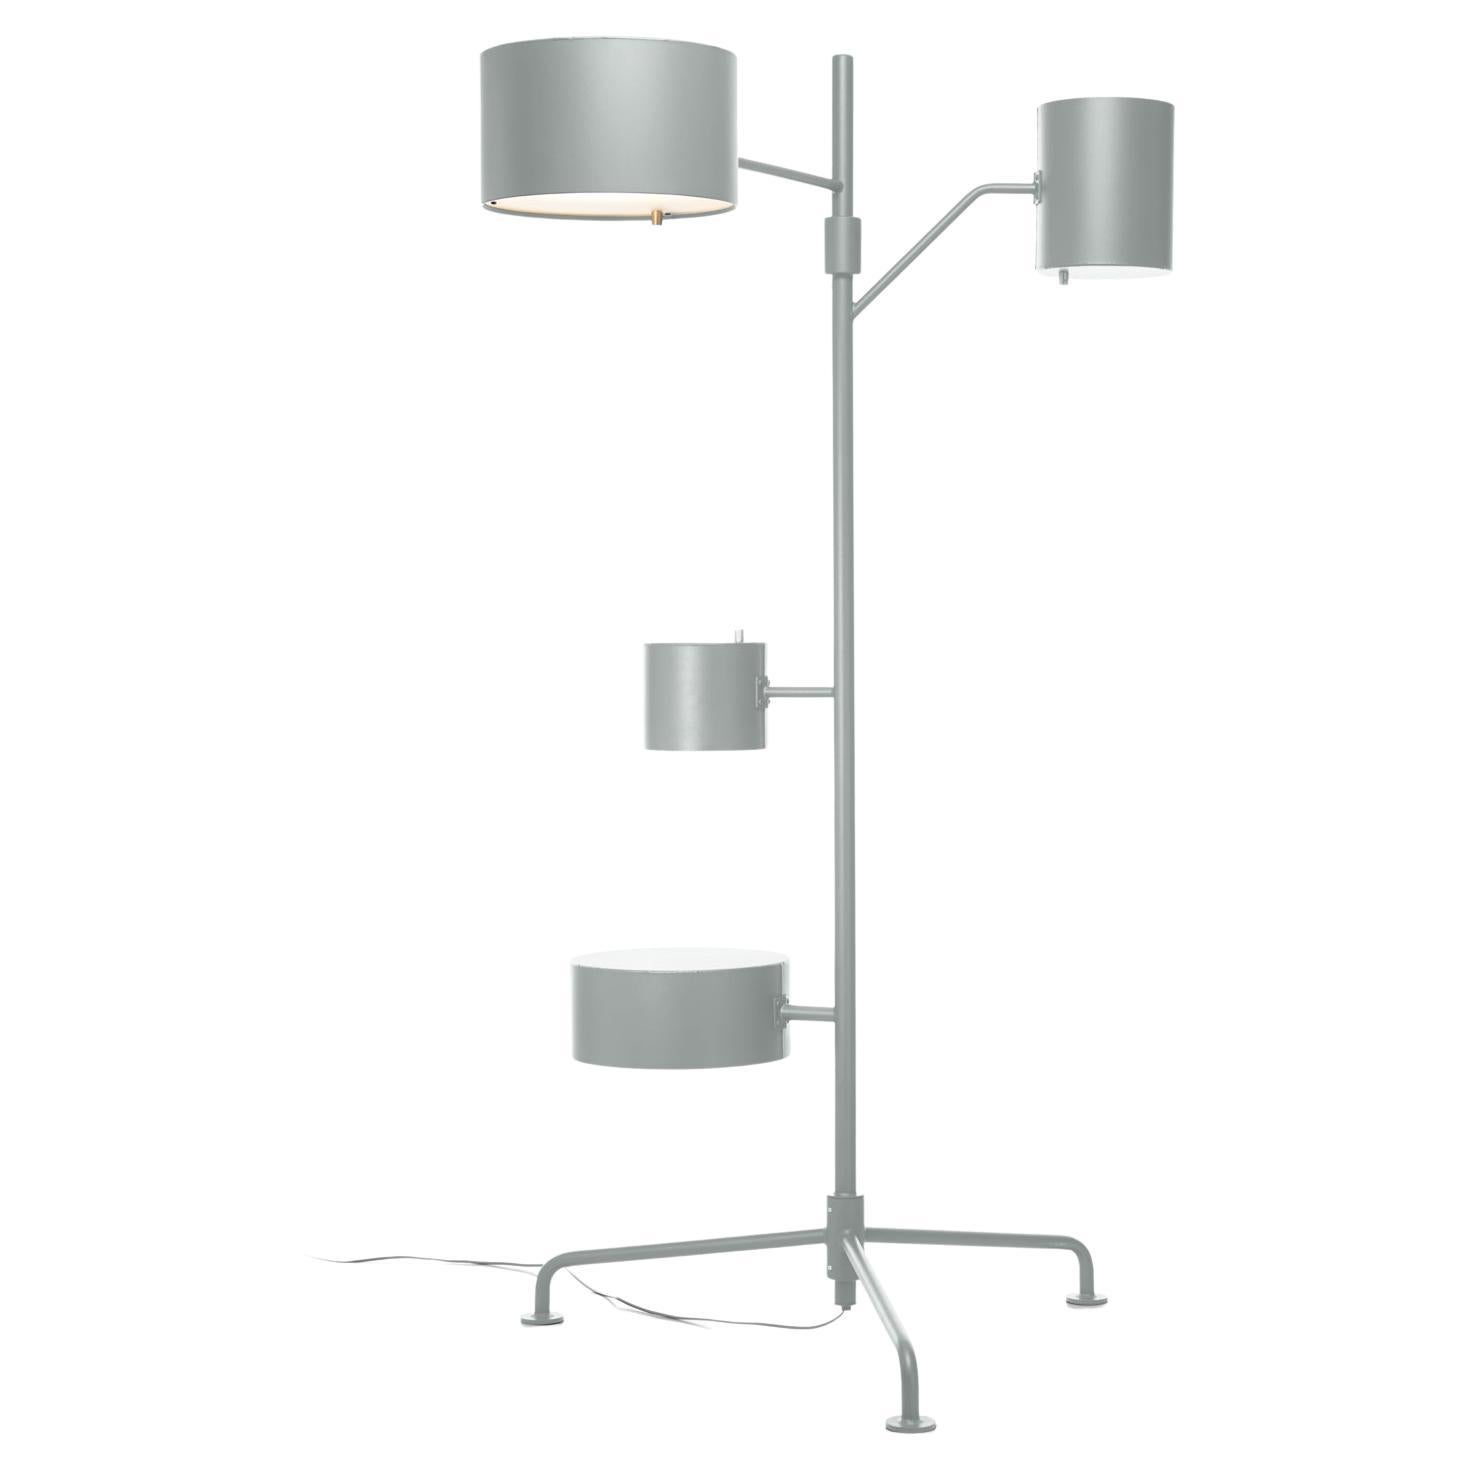 Lampadaire LED Statistocrat de Moooi en aluminium laqué gris clair mat